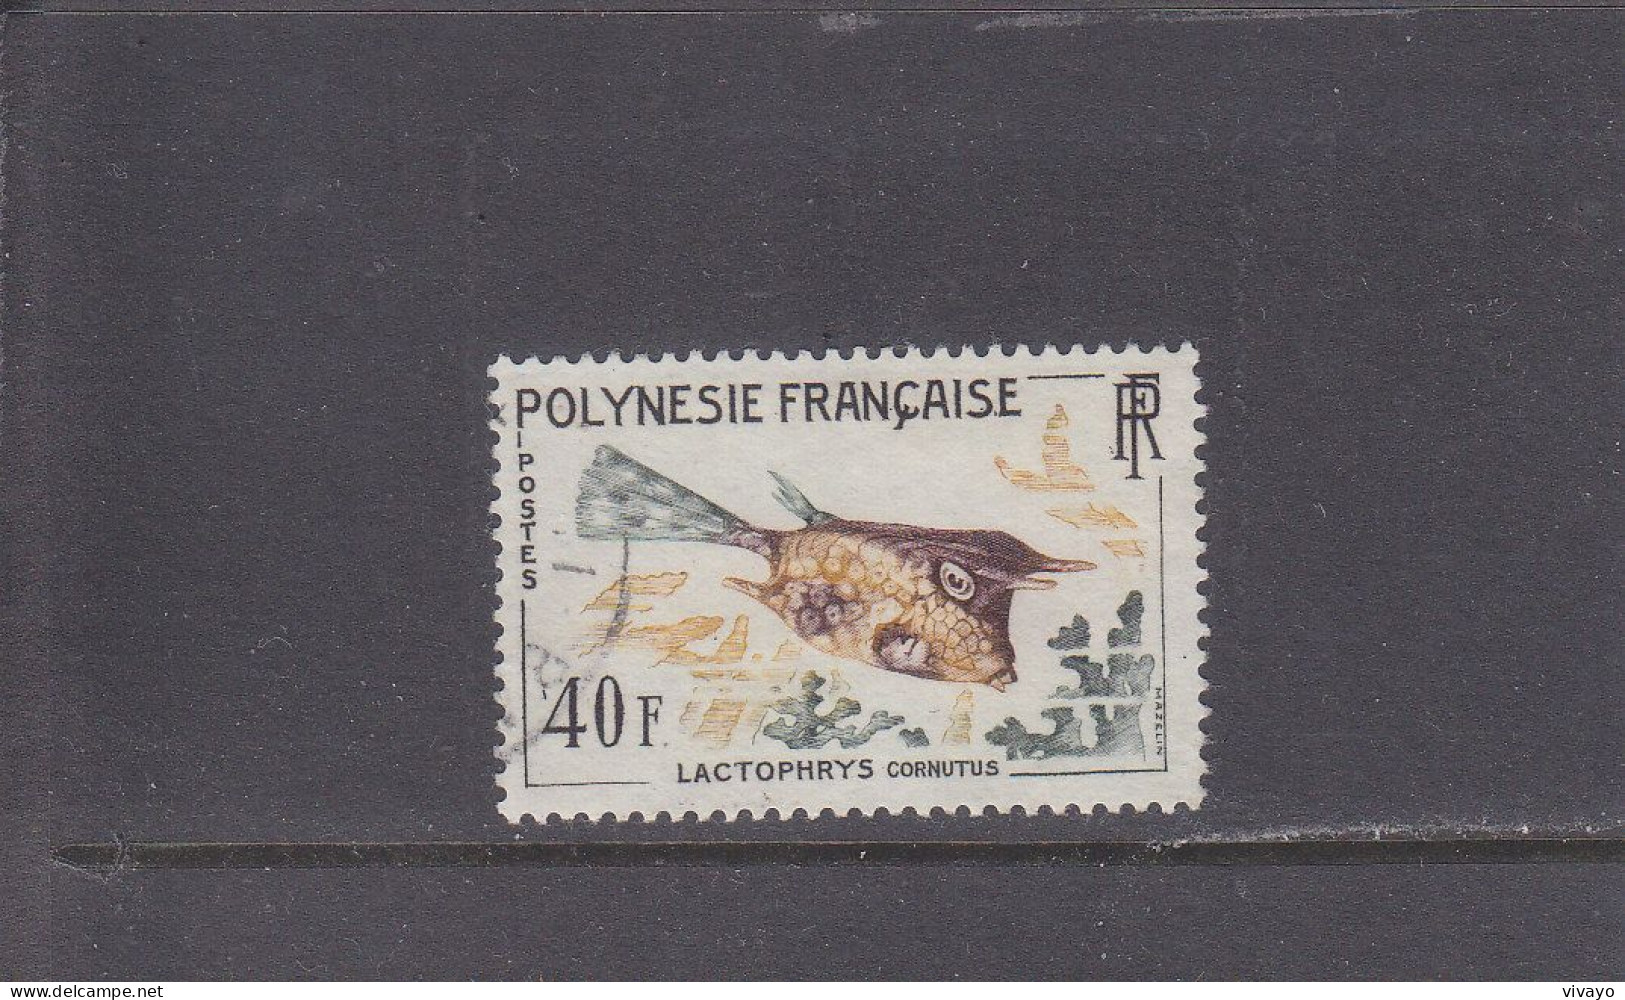 FRENCH POLYNESIA - POLYNESIE FRAN. - O / FINE CANCELLED - 1962 - TROPICAL FISH (TOP VALUE) - Yv. 21 - Mi. 27 - Gebruikt